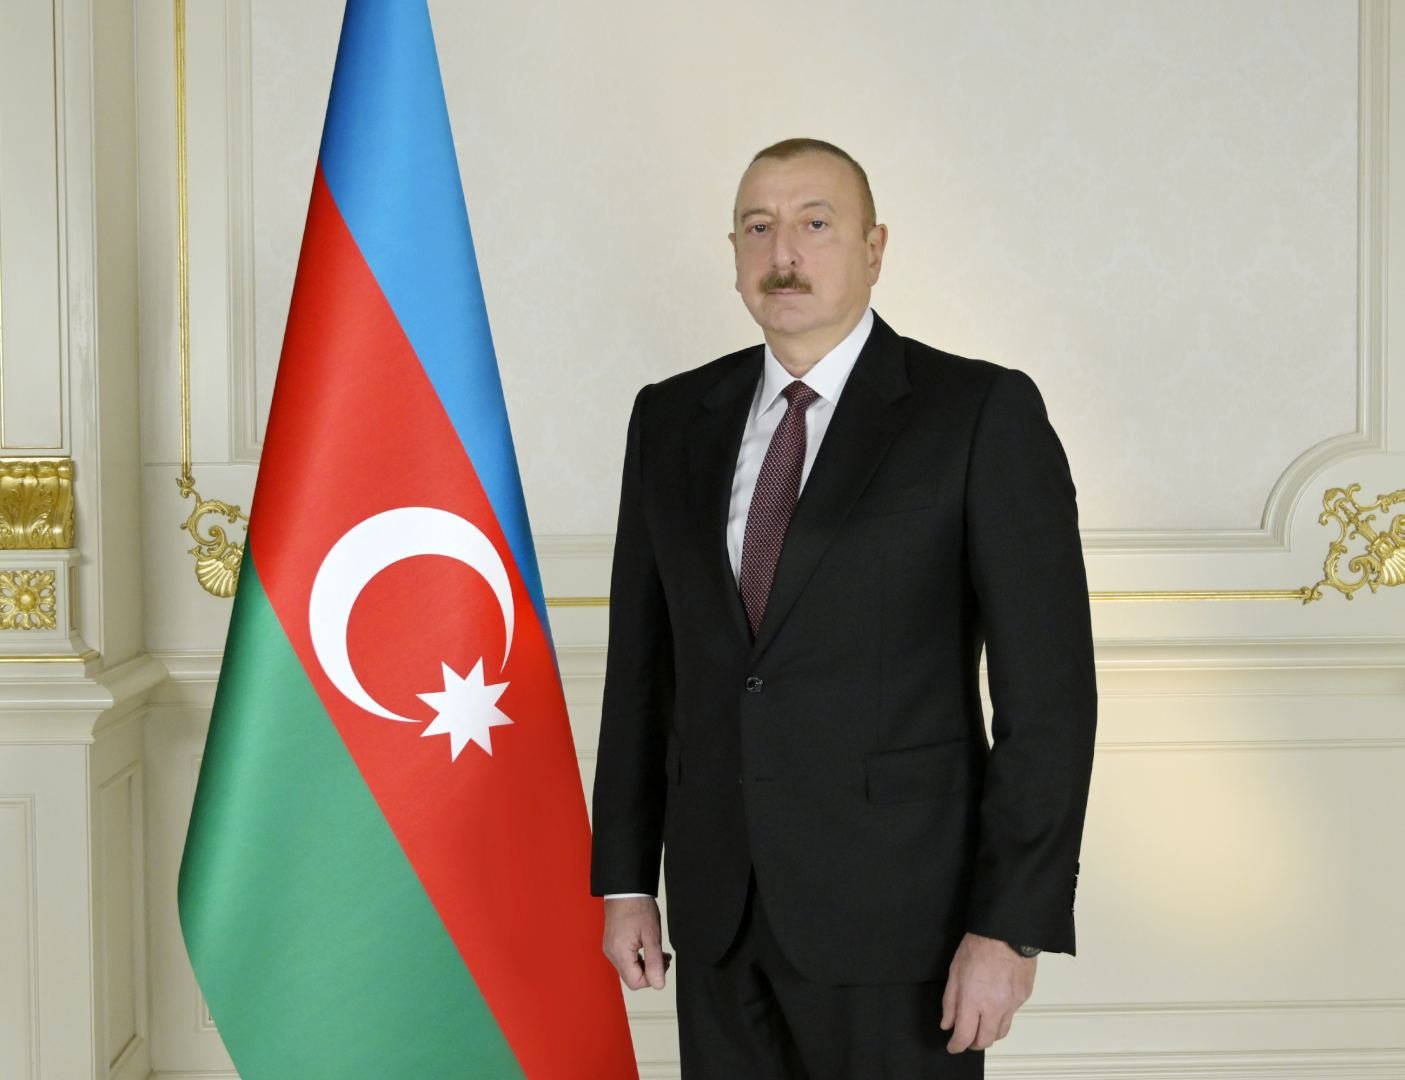 Президент Ильхам Алиев направил поздравительное письмо премьер-министру Пакистана